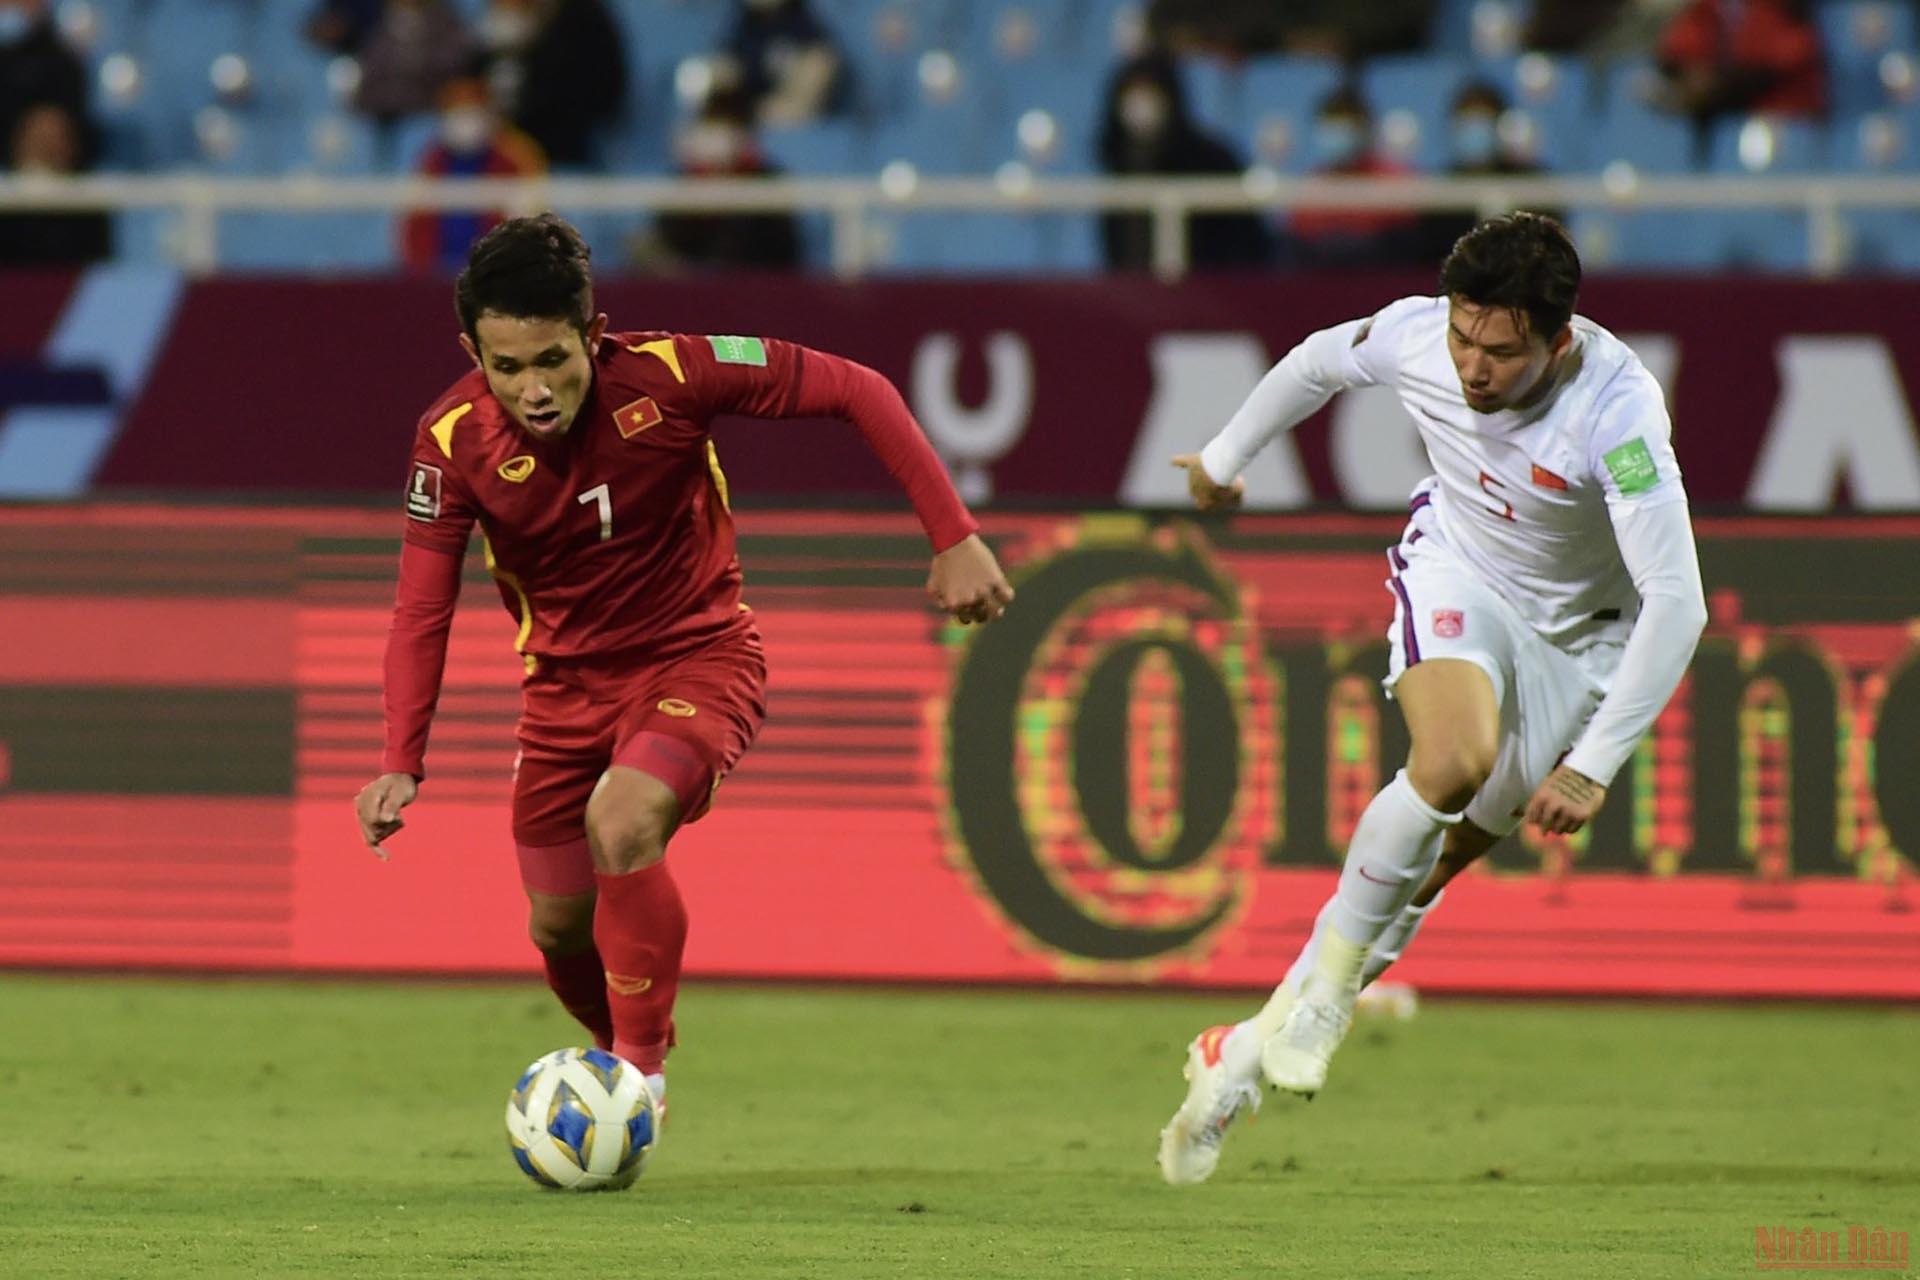 Đội tuyển Việt Nam chiến thắng 3-1 Trung Quốc trong ngày mùng 1 Tết -0